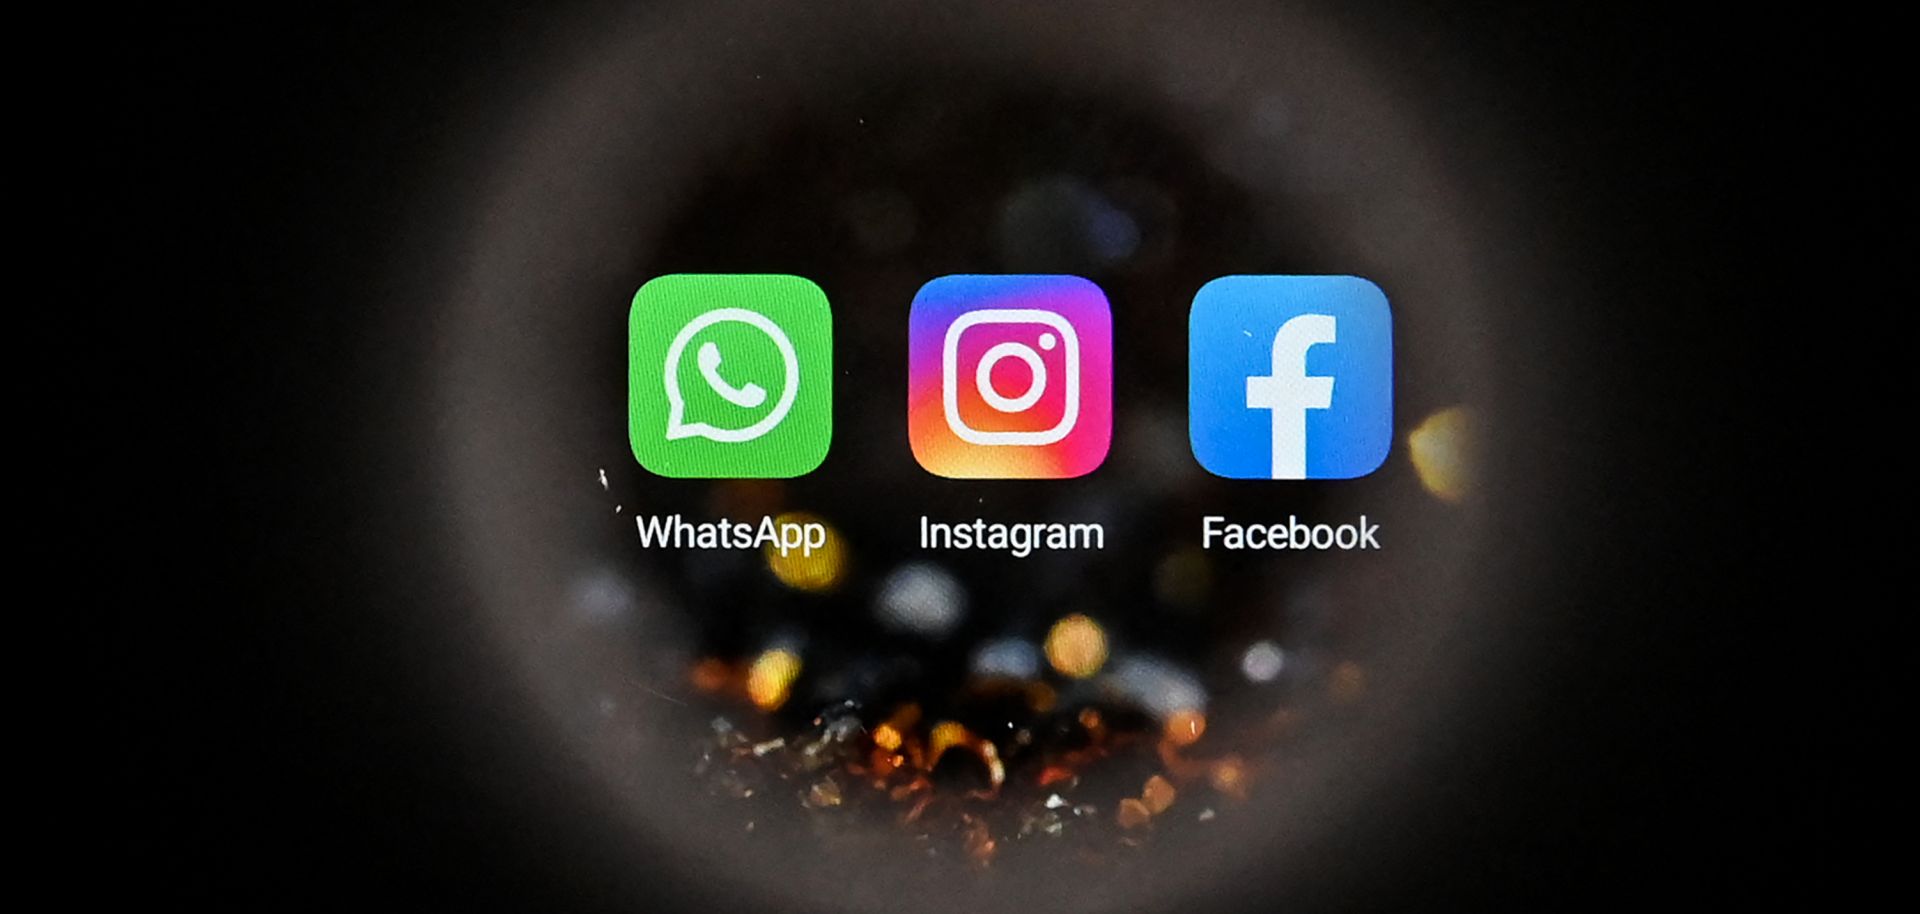 Los logotipos de las plataformas de redes sociales con sede en EE. UU. WhatsApp, Instagram y Facebook (de izquierda a derecha) se ven en la pantalla de un teléfono inteligente en Moscú, Rusia, el 5 de octubre de 2021.